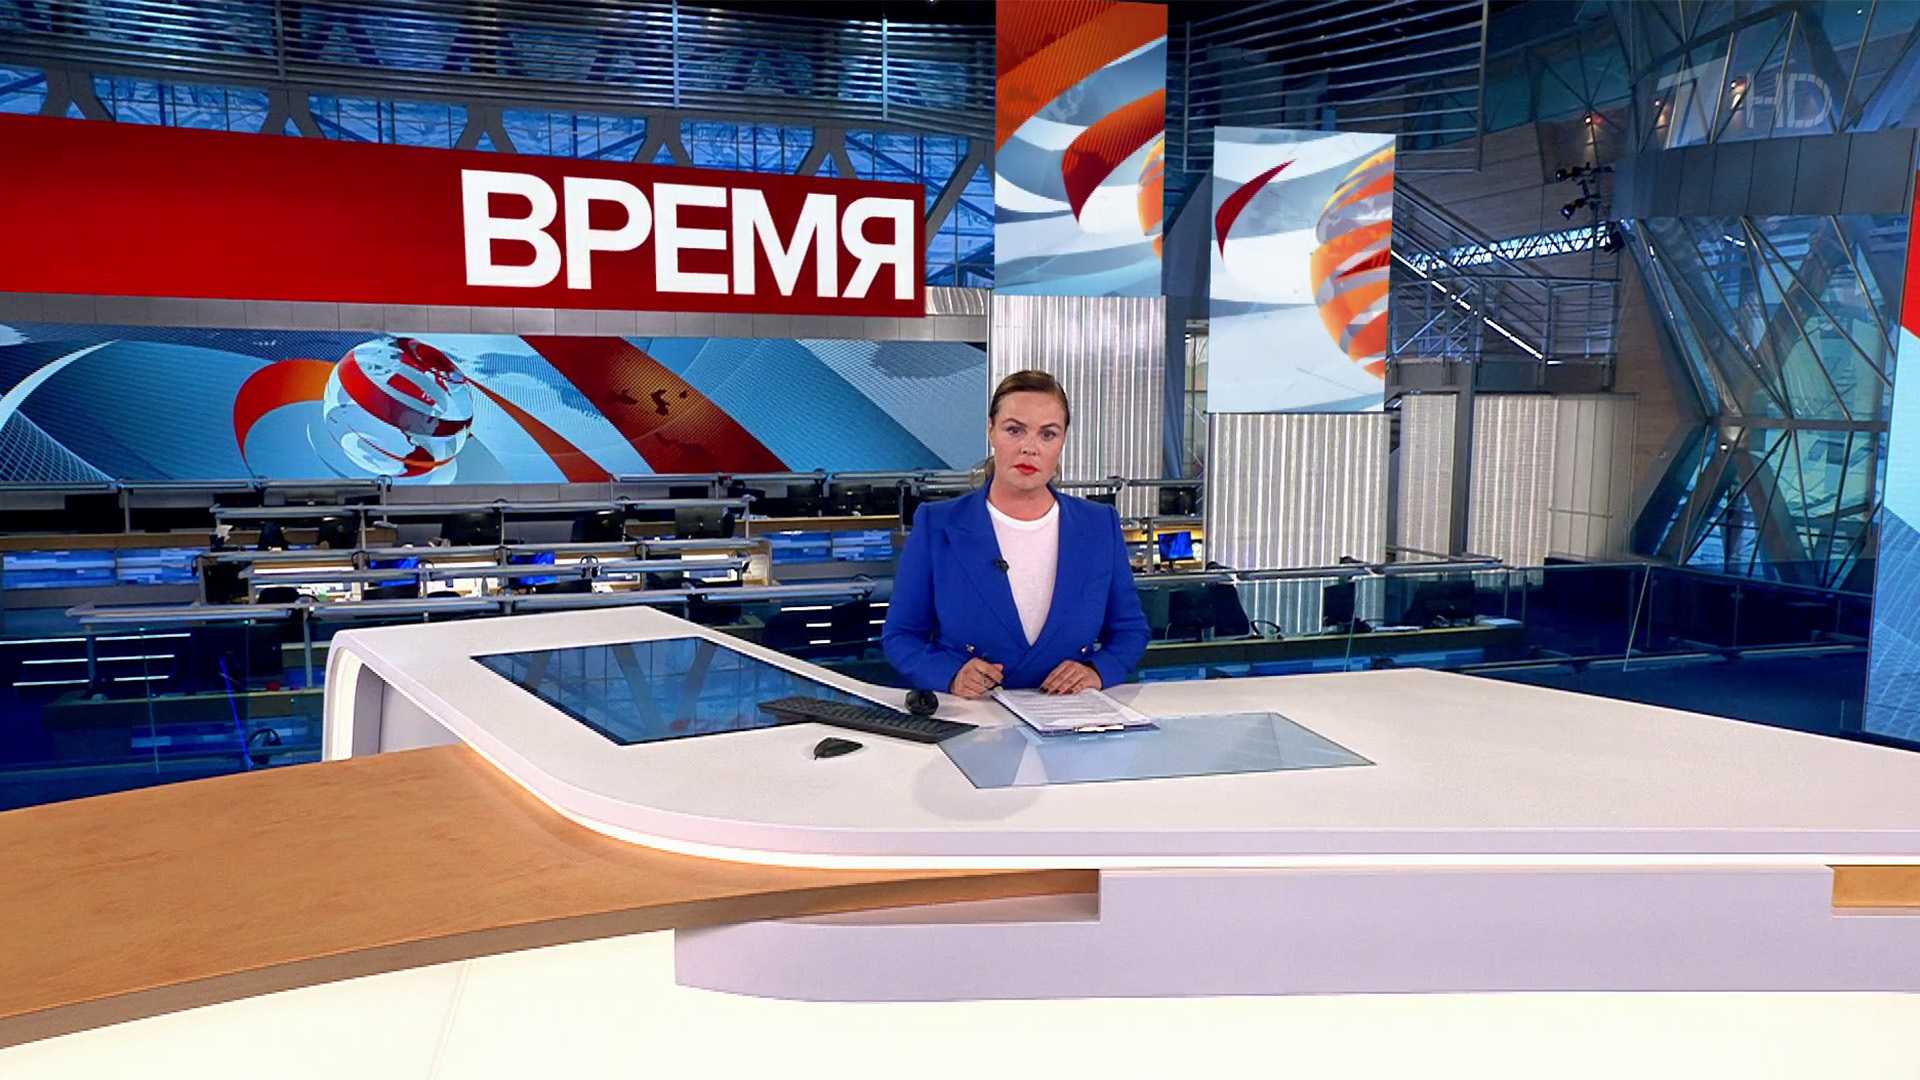 Мелодрамы 2020 на канале россия 1: кино по выходным (новинки и список сериалов)